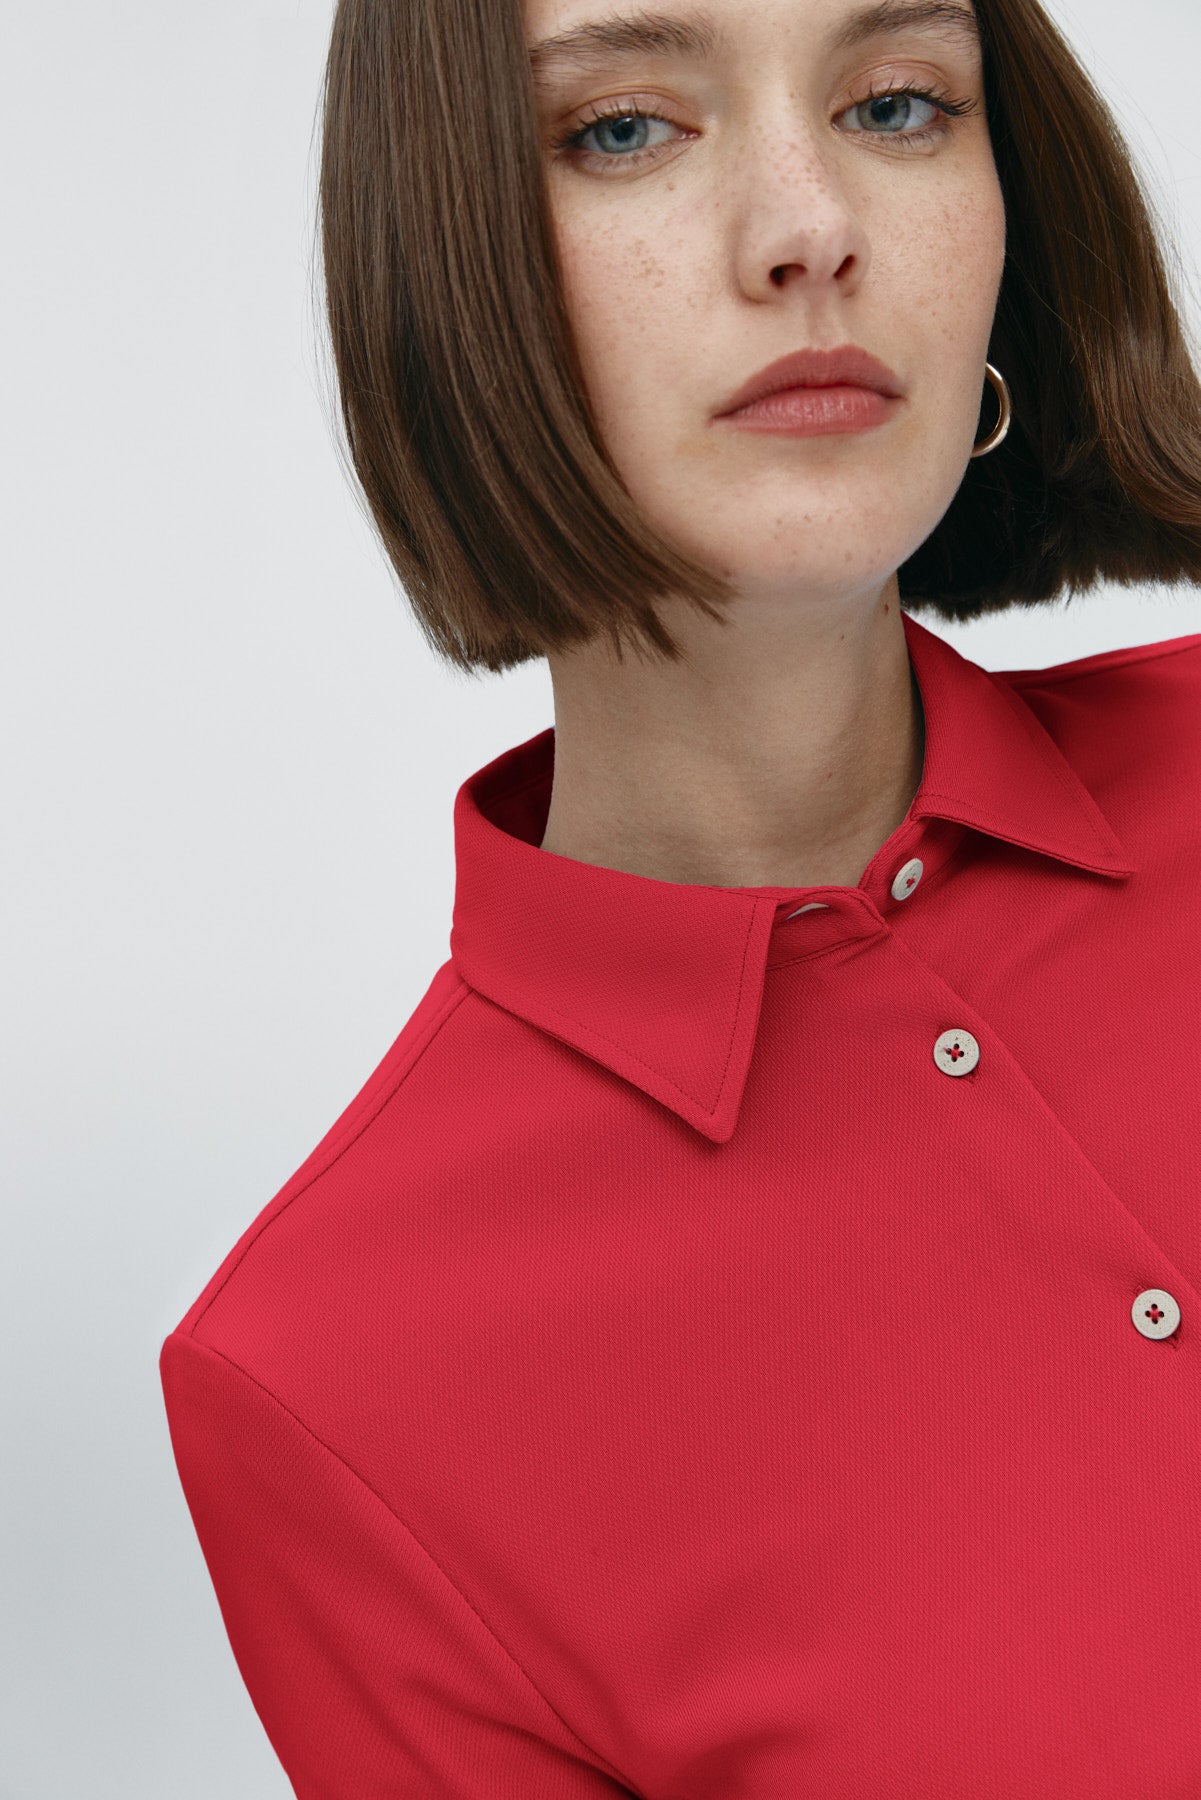 Camisa rojo atlanta oversize de Sepiia, elegante y resistente a manchas y arrugas. Foto retrato